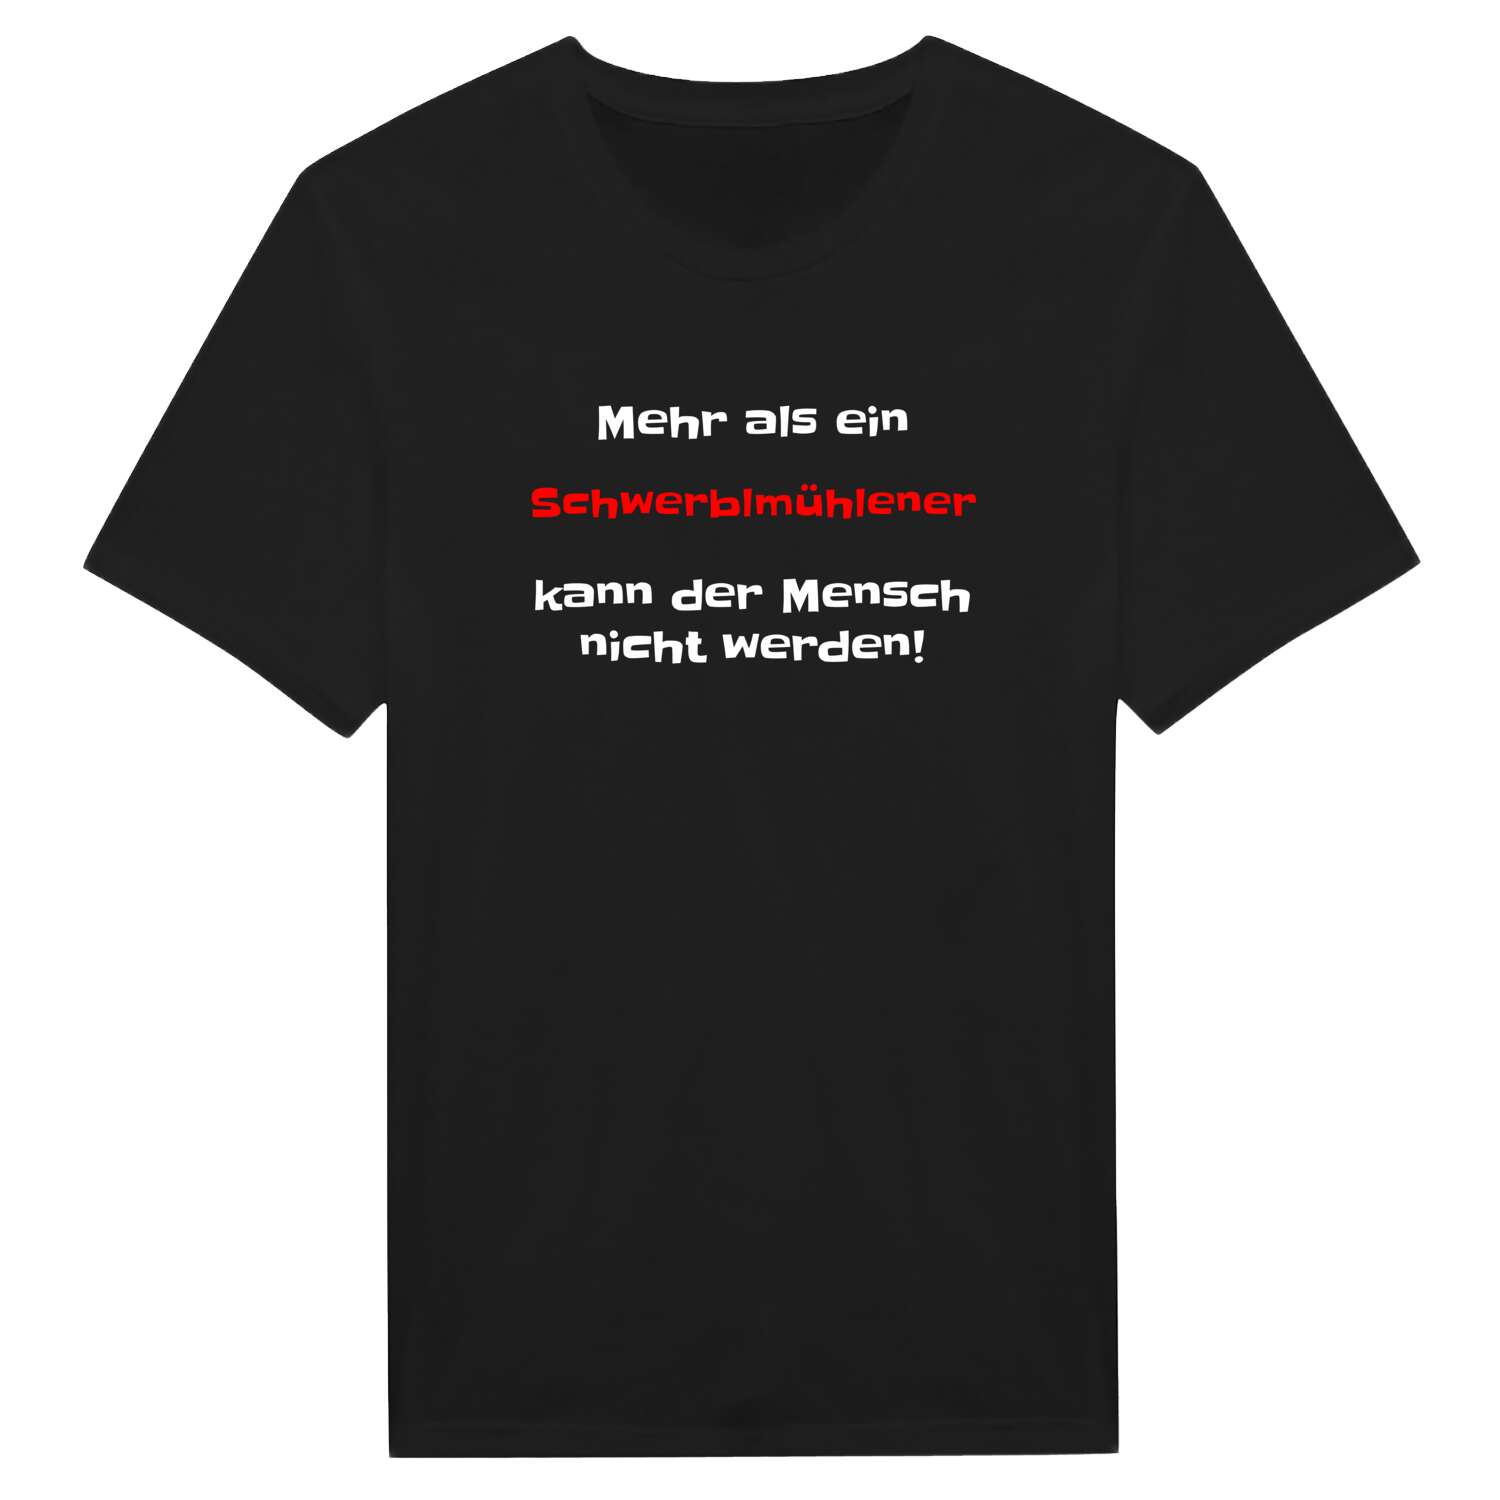 Schwerblmühle T-Shirt »Mehr als ein«